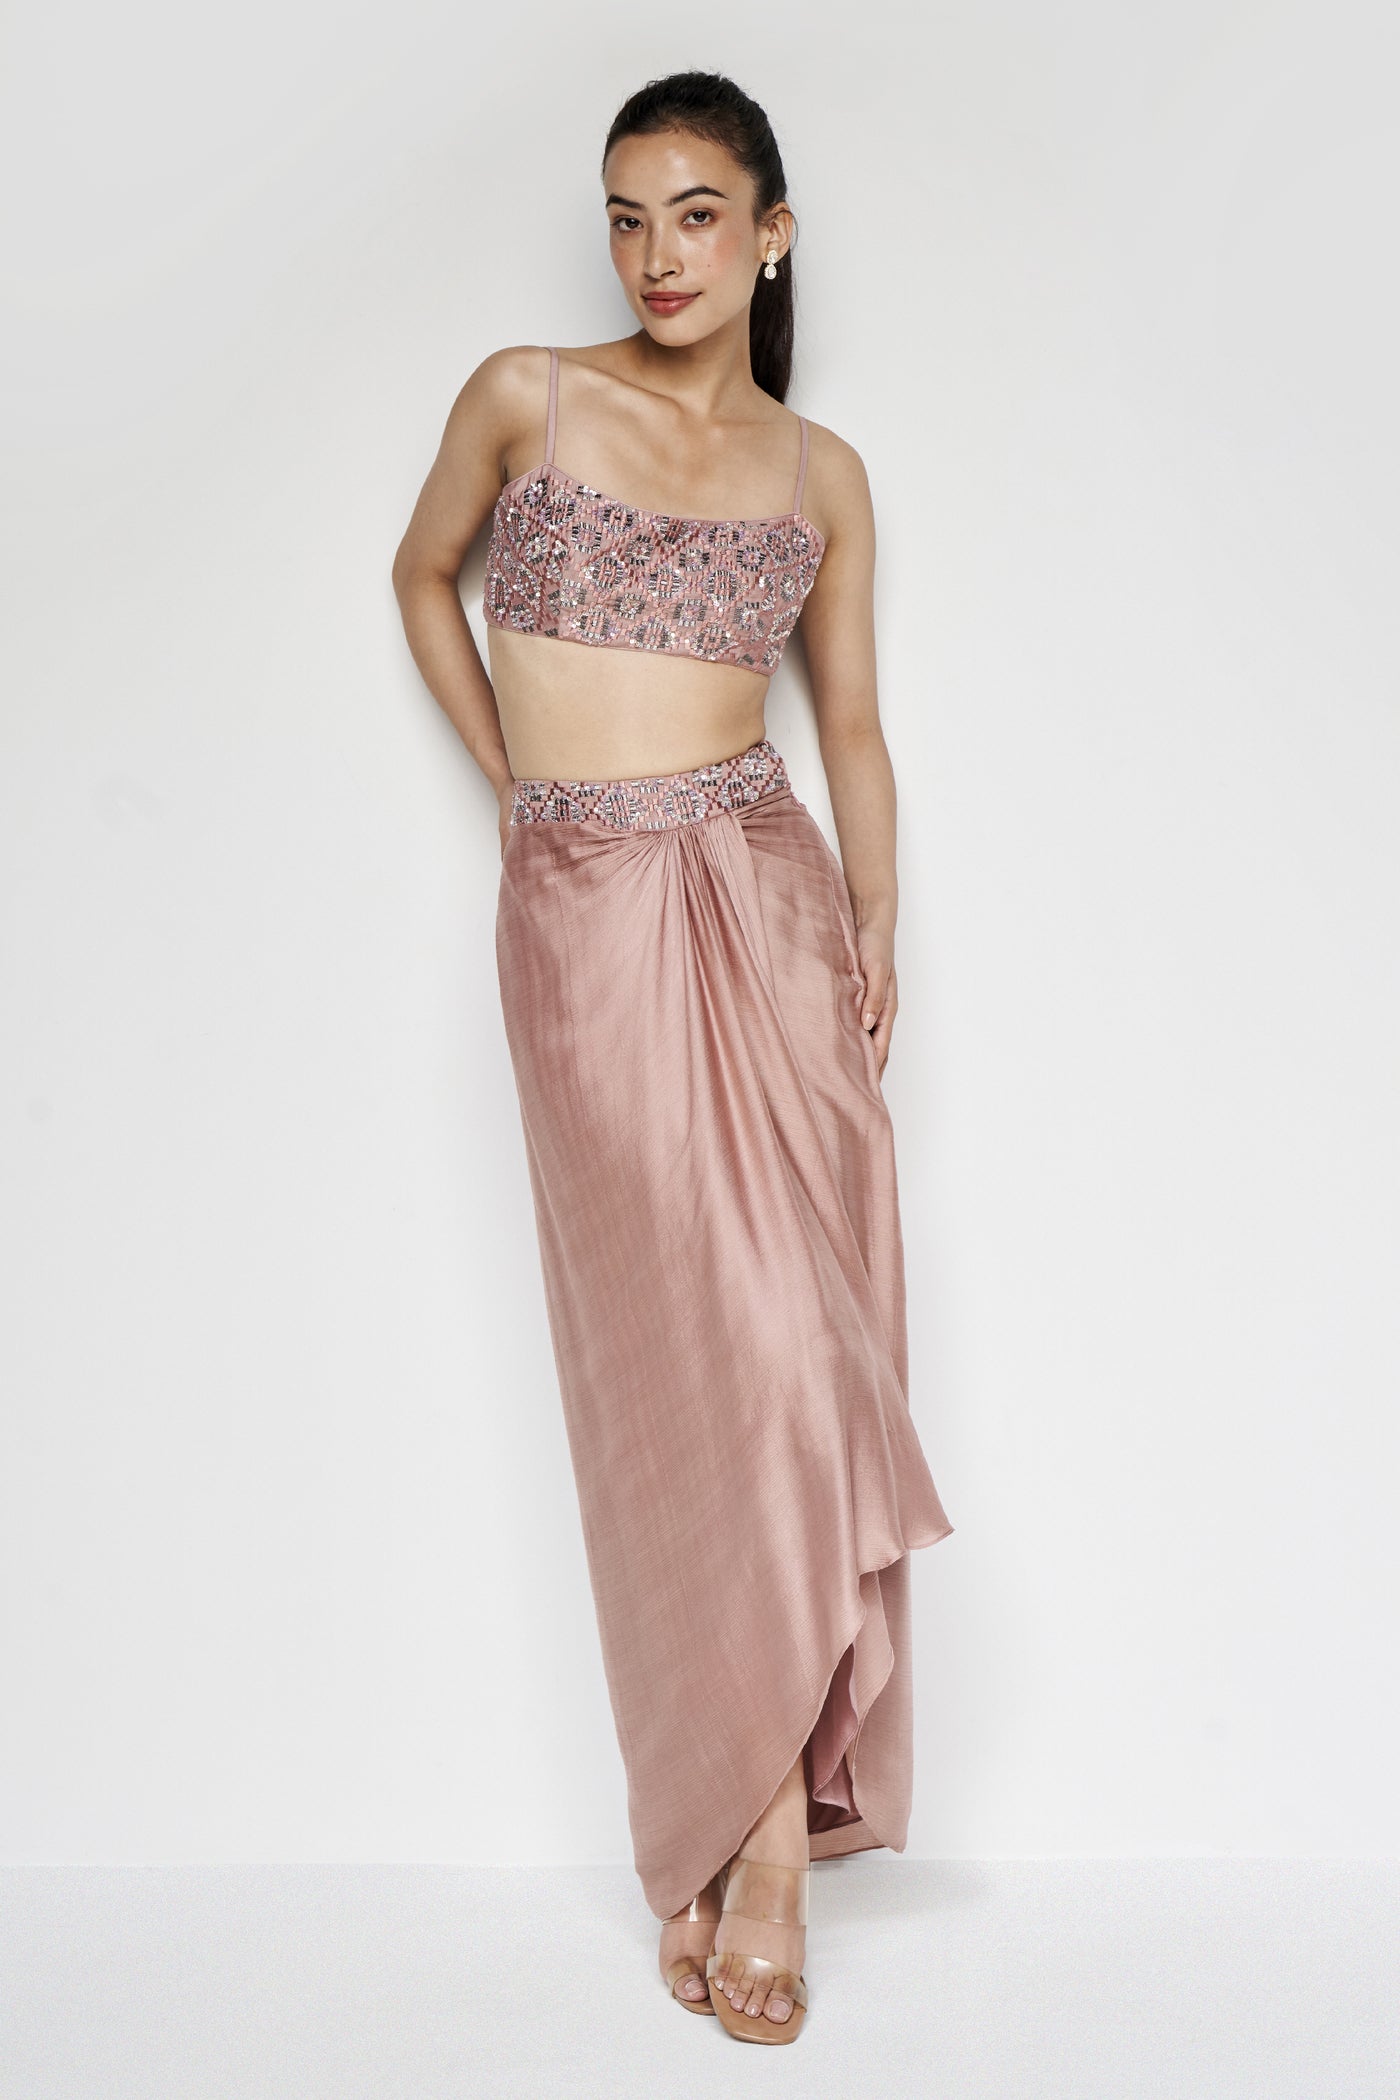 Anita Dongre Esilda Skirt Set Old Rose indian designer wear online shopping melange singapore